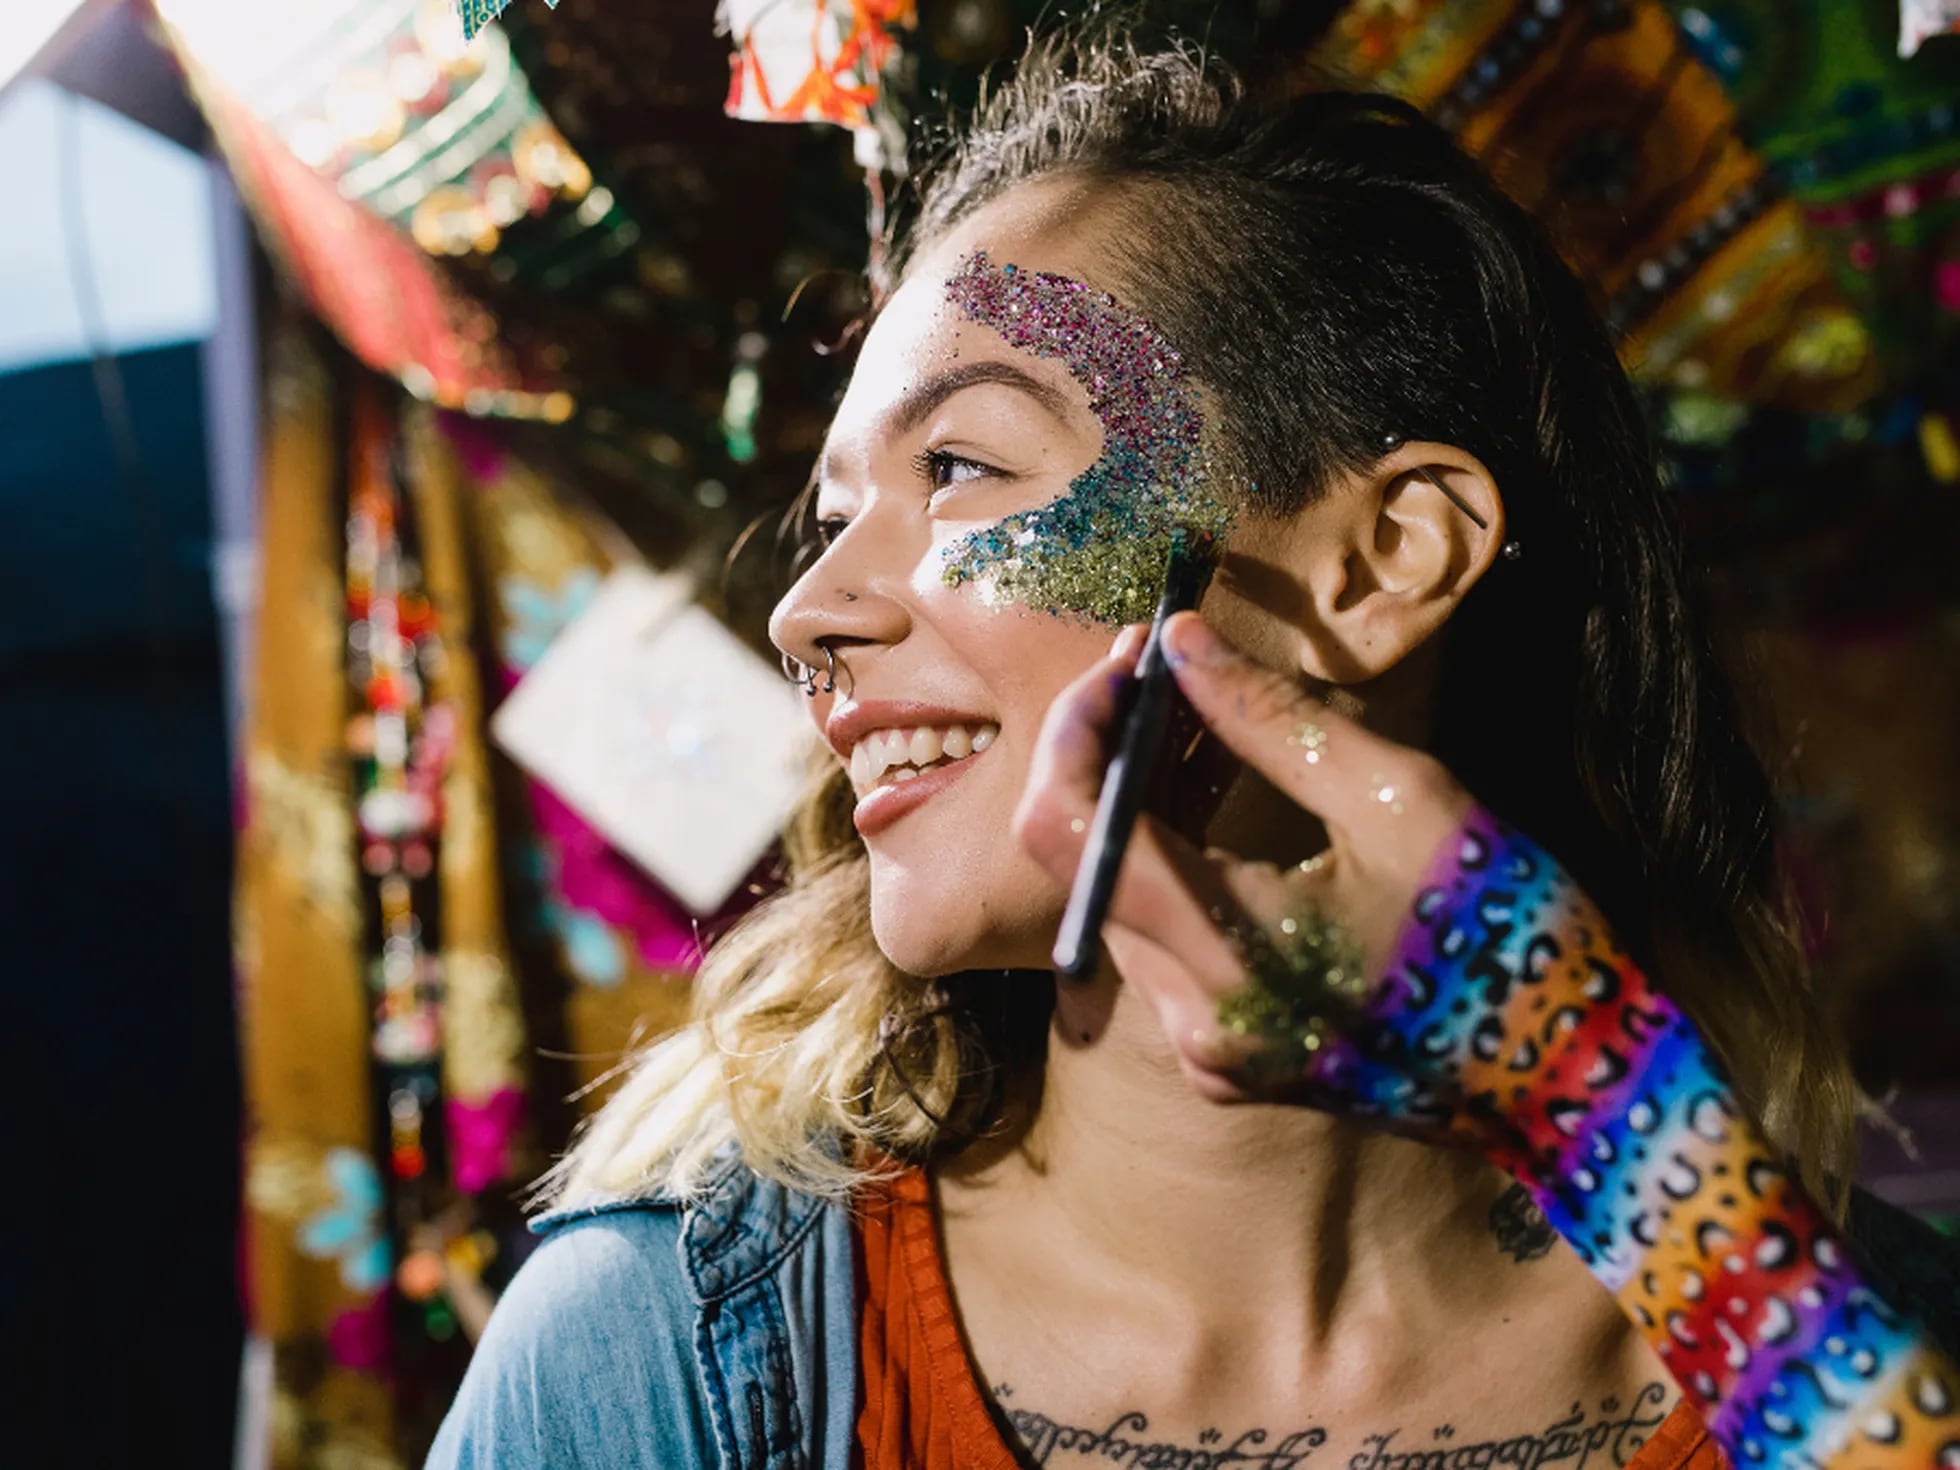 Maquillaje de Carnaval para Mujer: 20 Ideas con Paso a Paso Fácil